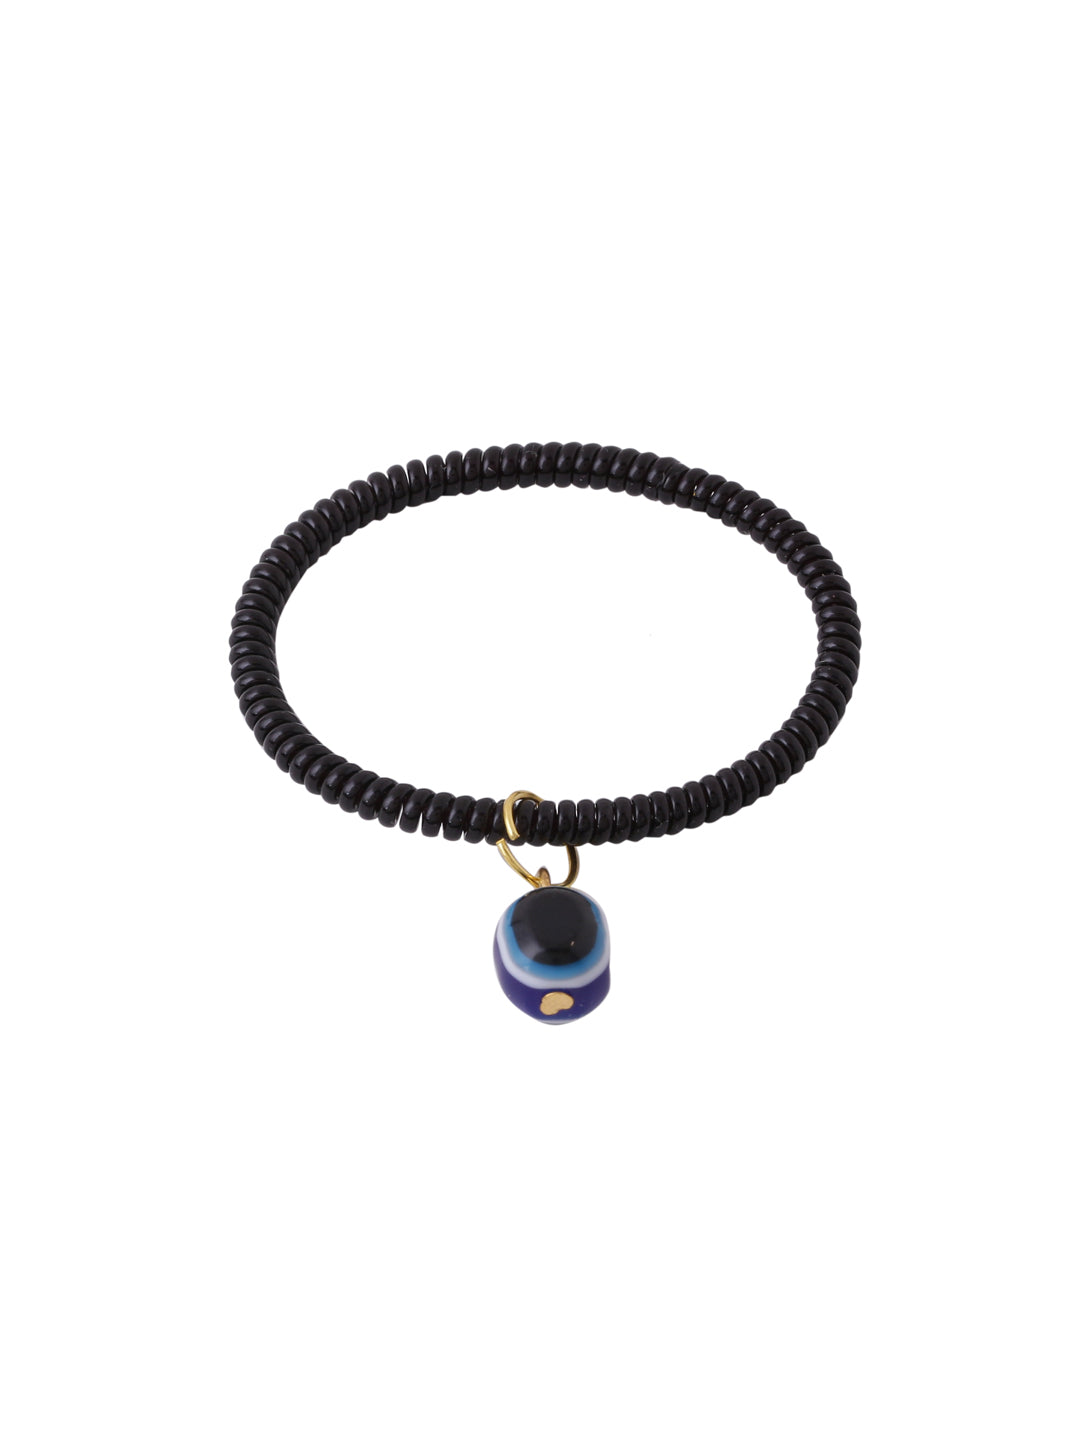 Women's black evil eye adjustable bracelet - NVR